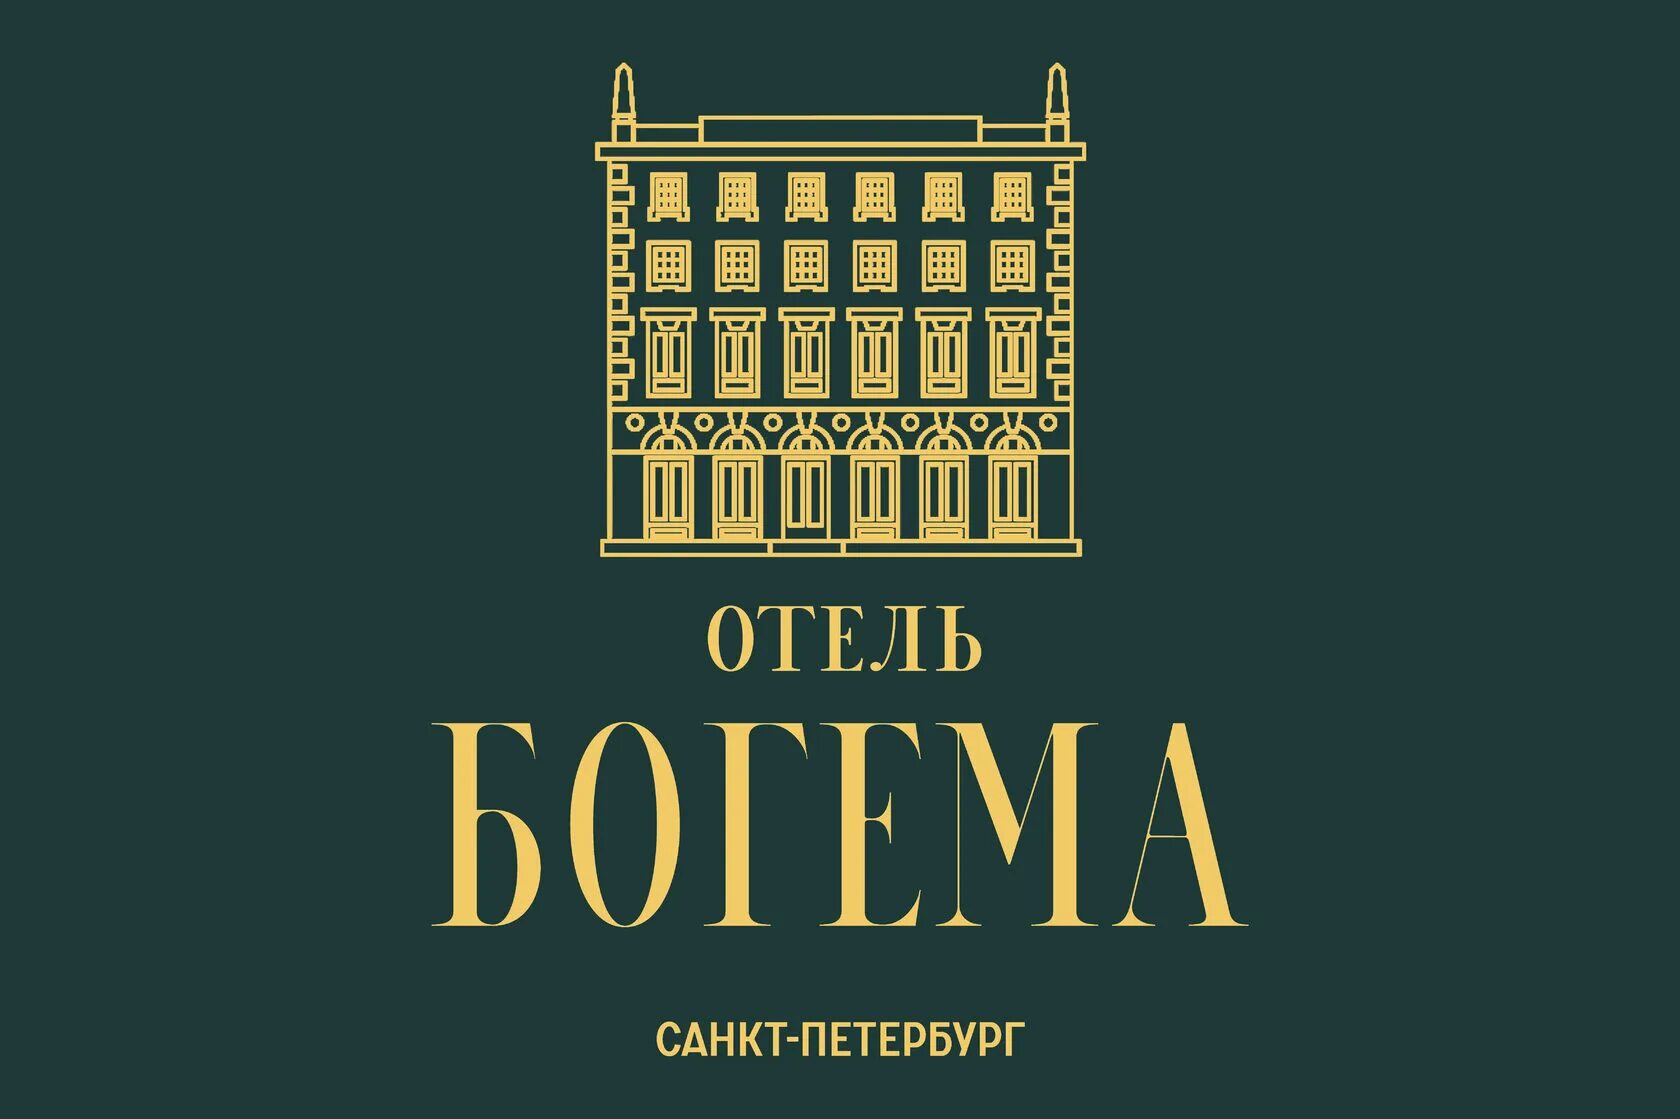 Отель Богема Санкт-Петербург. Отель Богема СПБ. Богема отель Санкт-Петербург фото. Отель Богема Санкт-Петербург логотип.